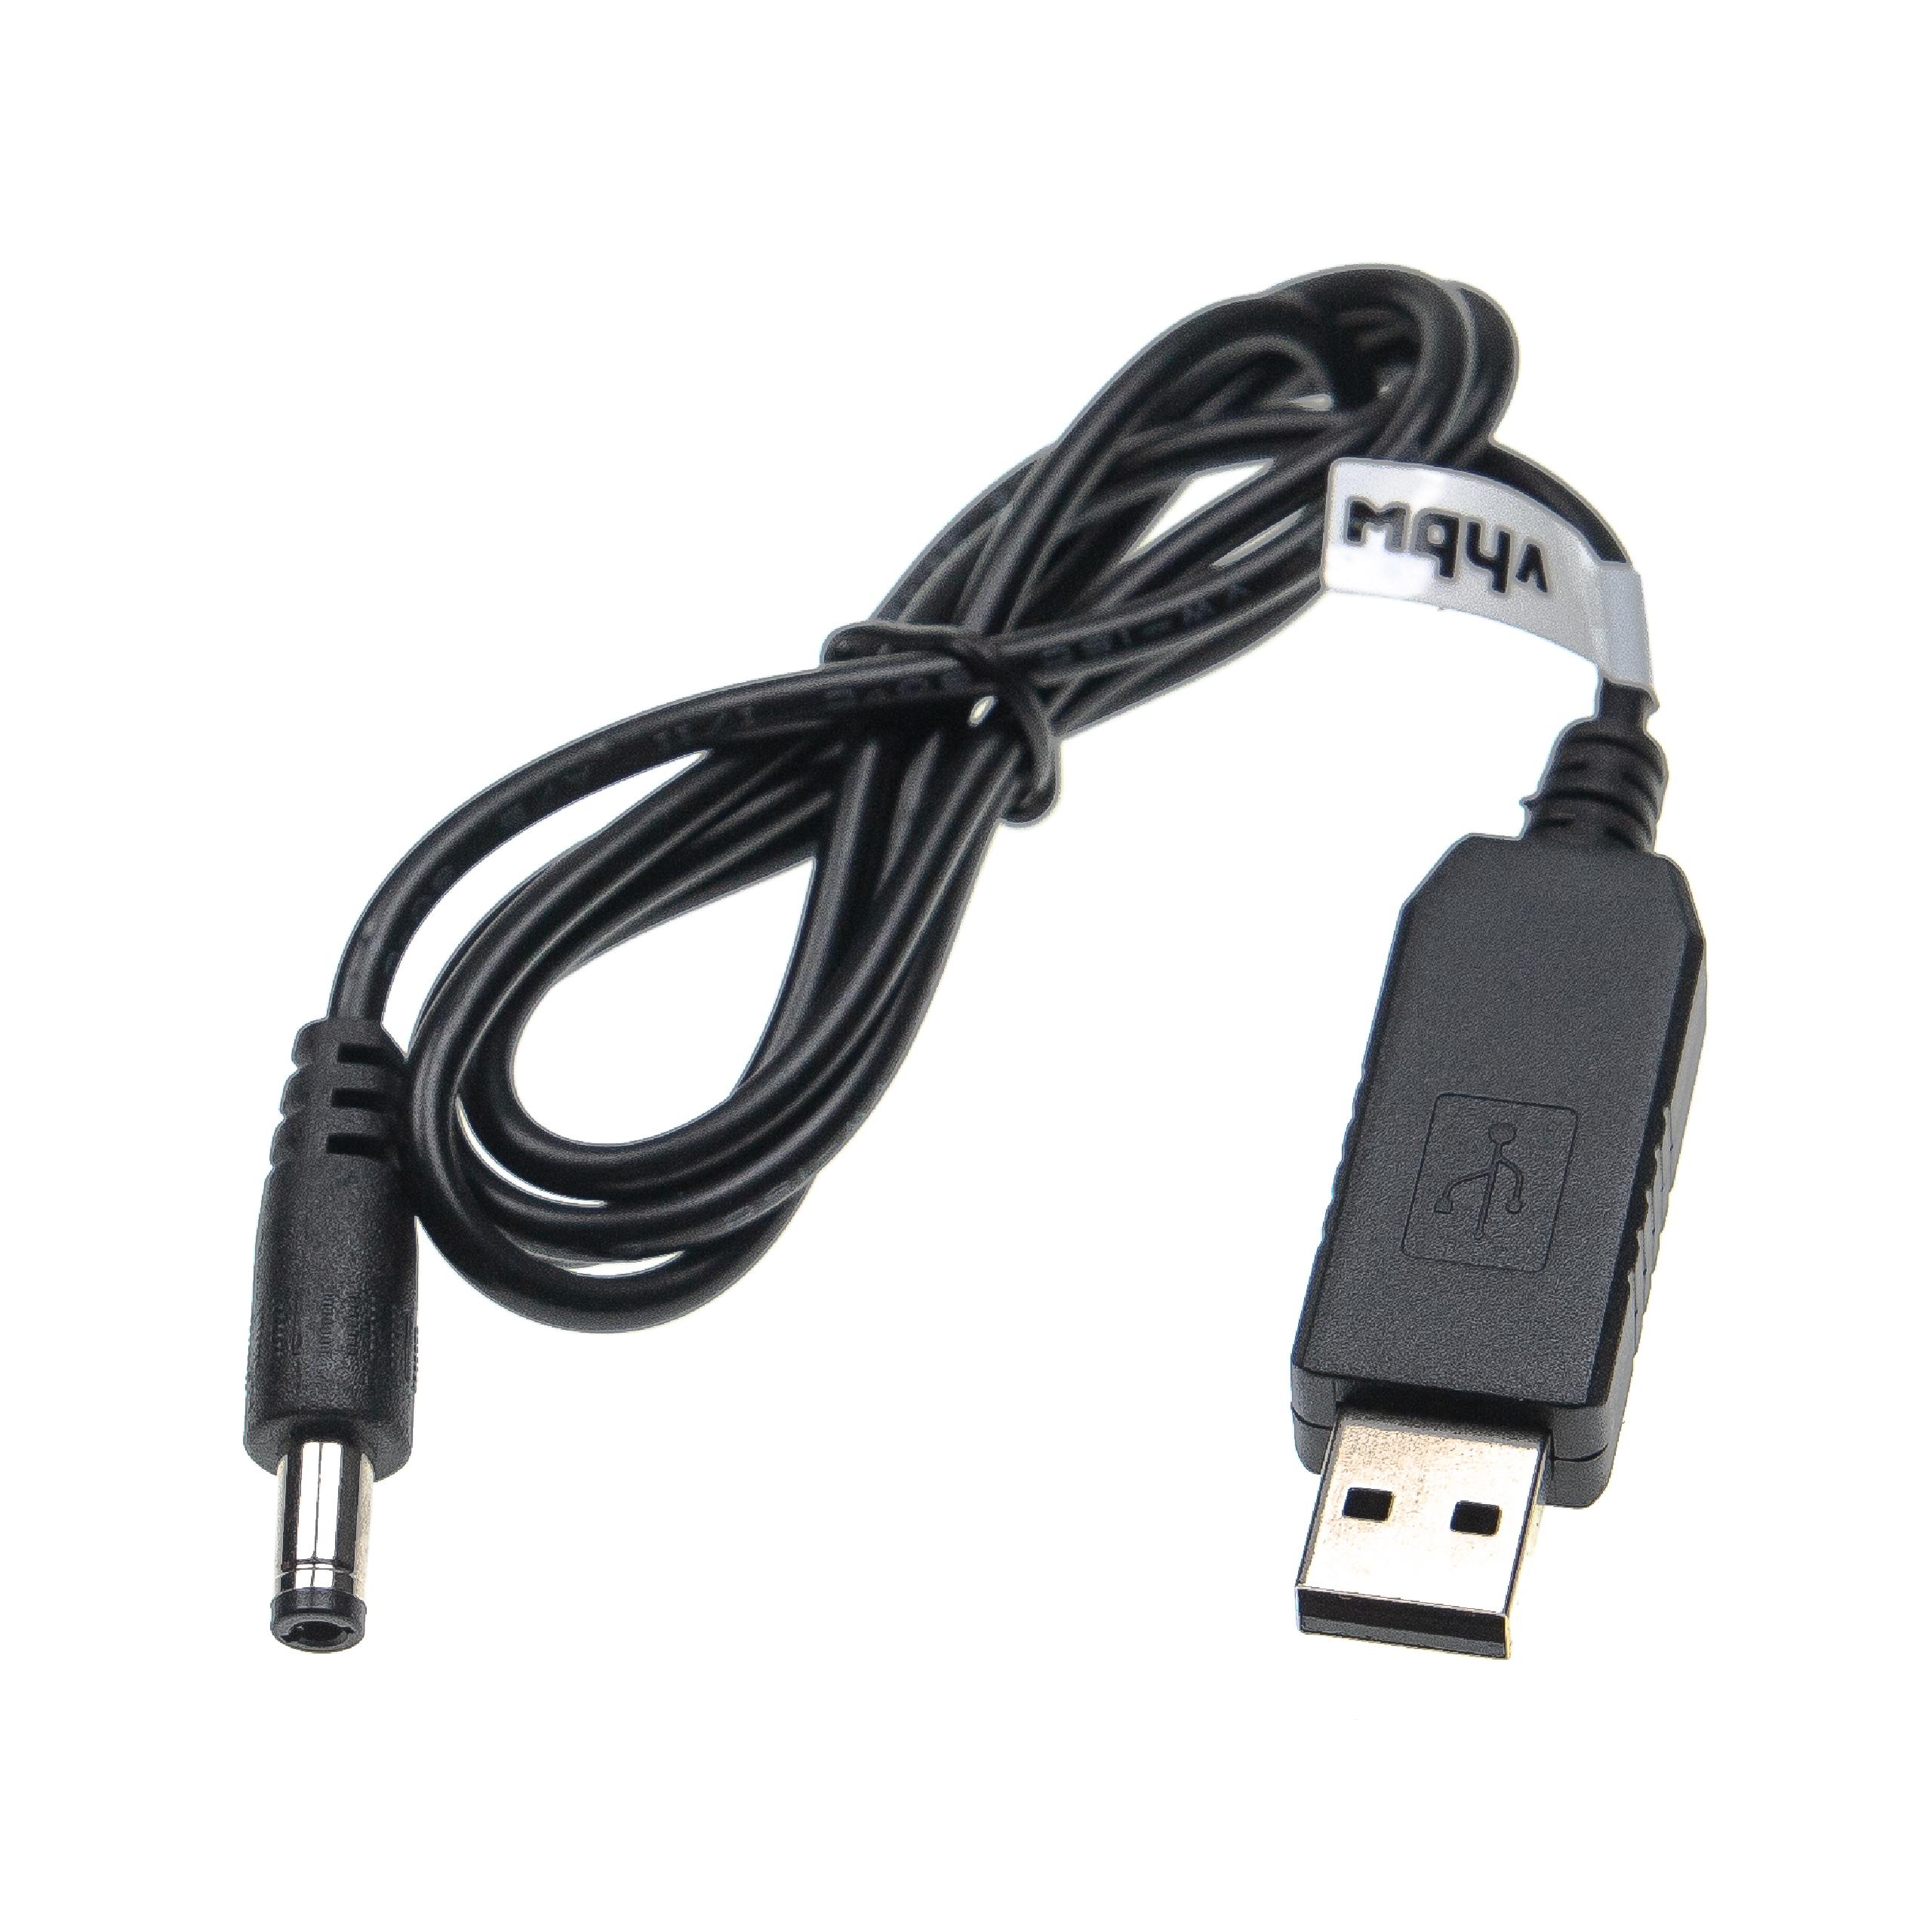 Cable de carga USB a coaxial 5,5 x 2,5 mm - 5 V / 3 A a 12 V / 1 A 